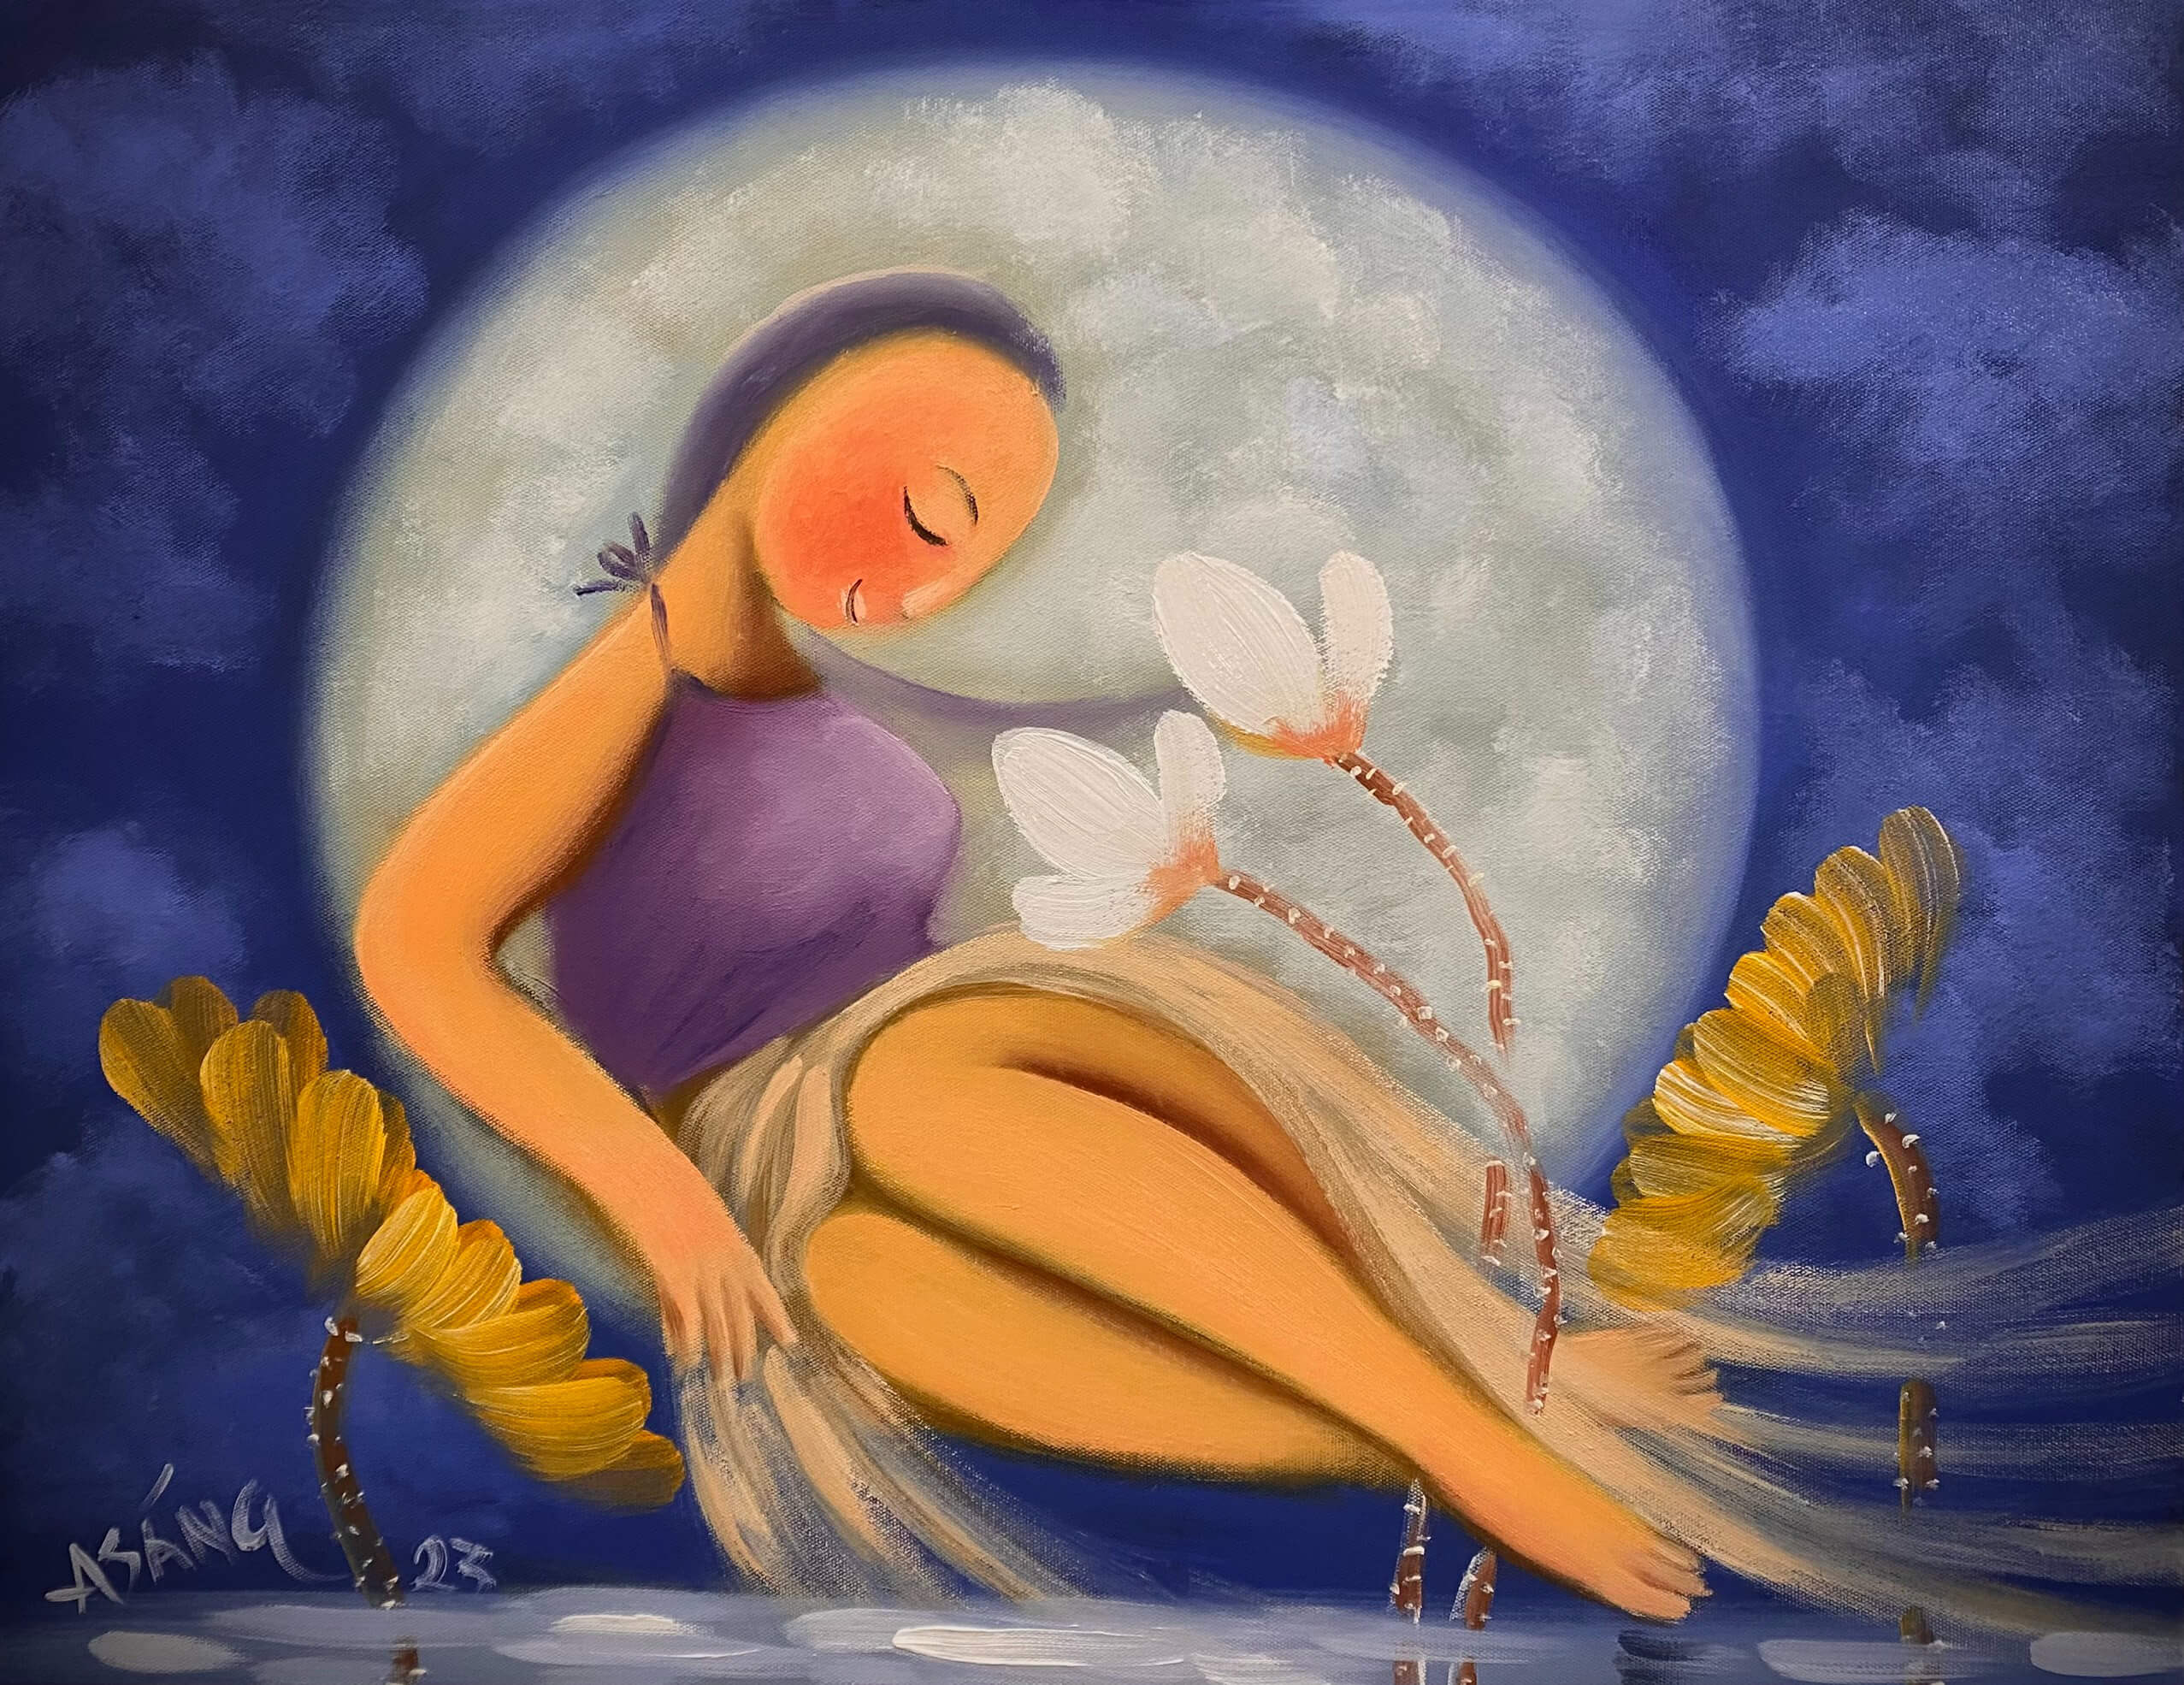 Thiếu nữ chơi trăng tranh sơn dầu họa sĩ Hoàng A sáng